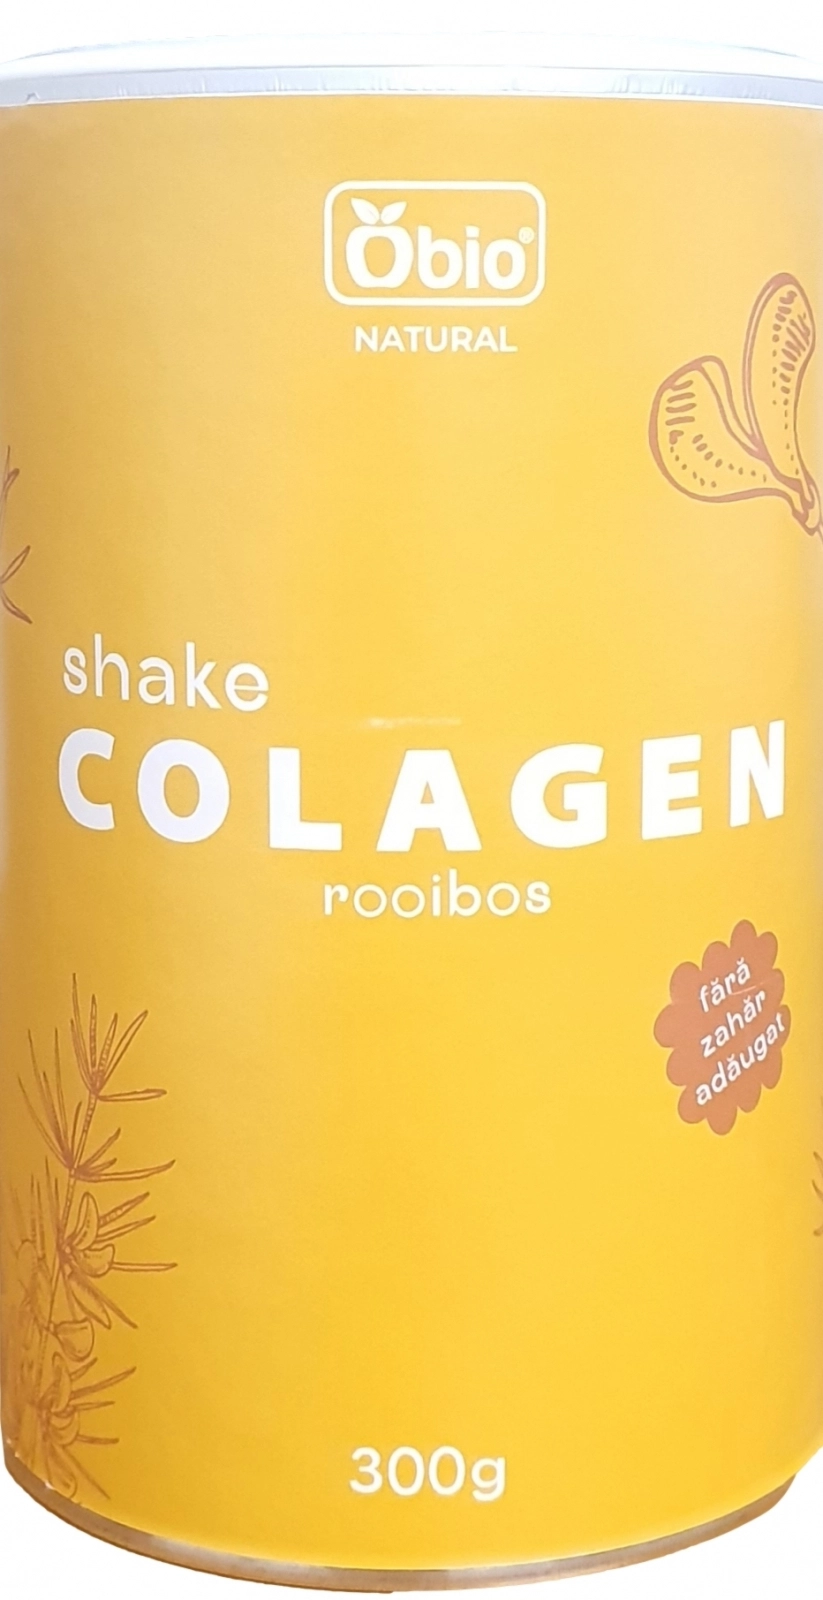 Colagen shake cu rooibos, 300g, OBio